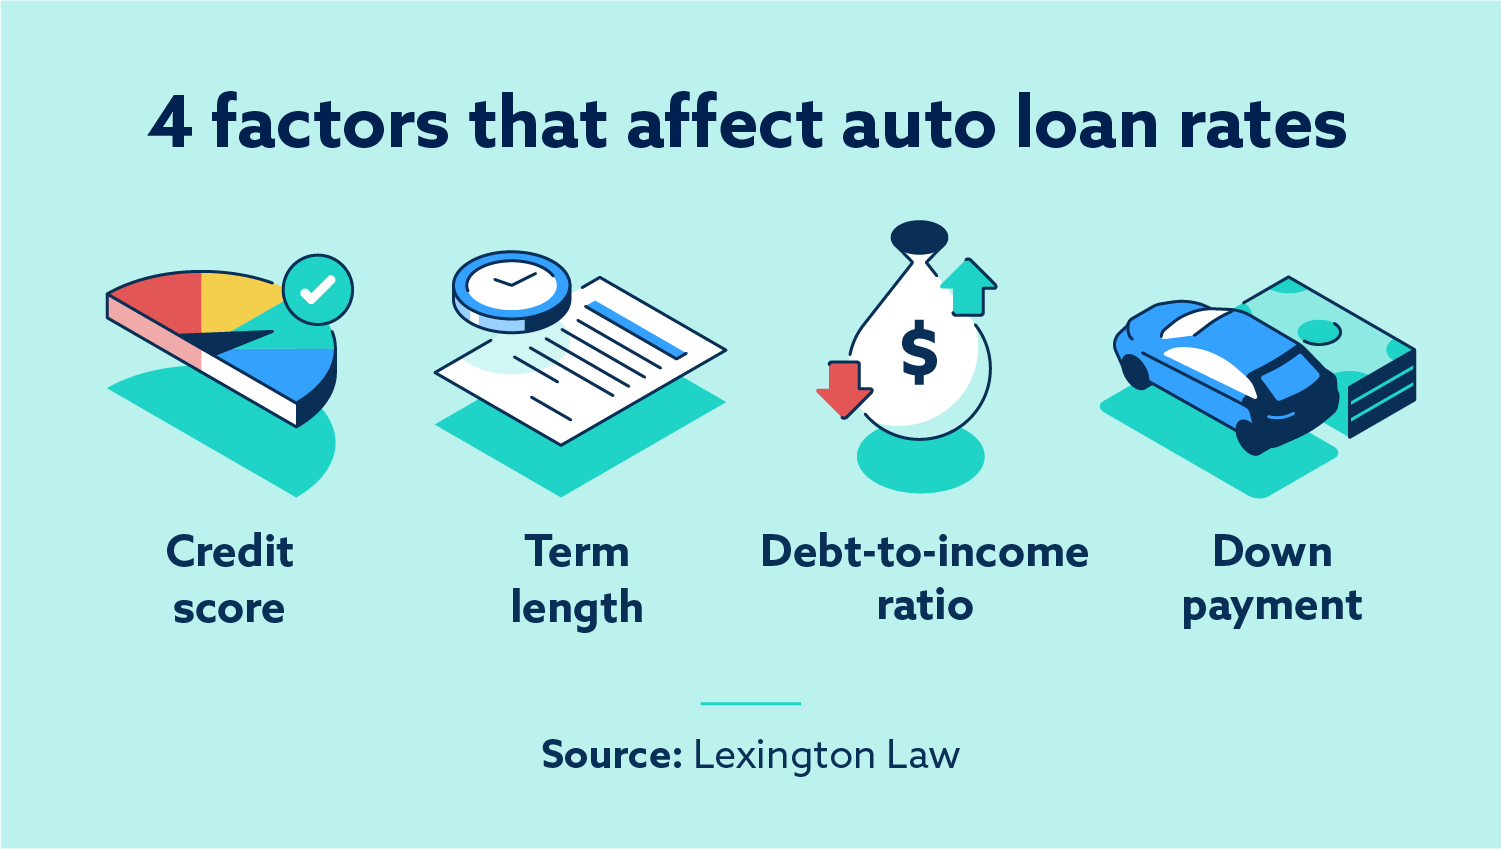 Factors that affect auto loan rates